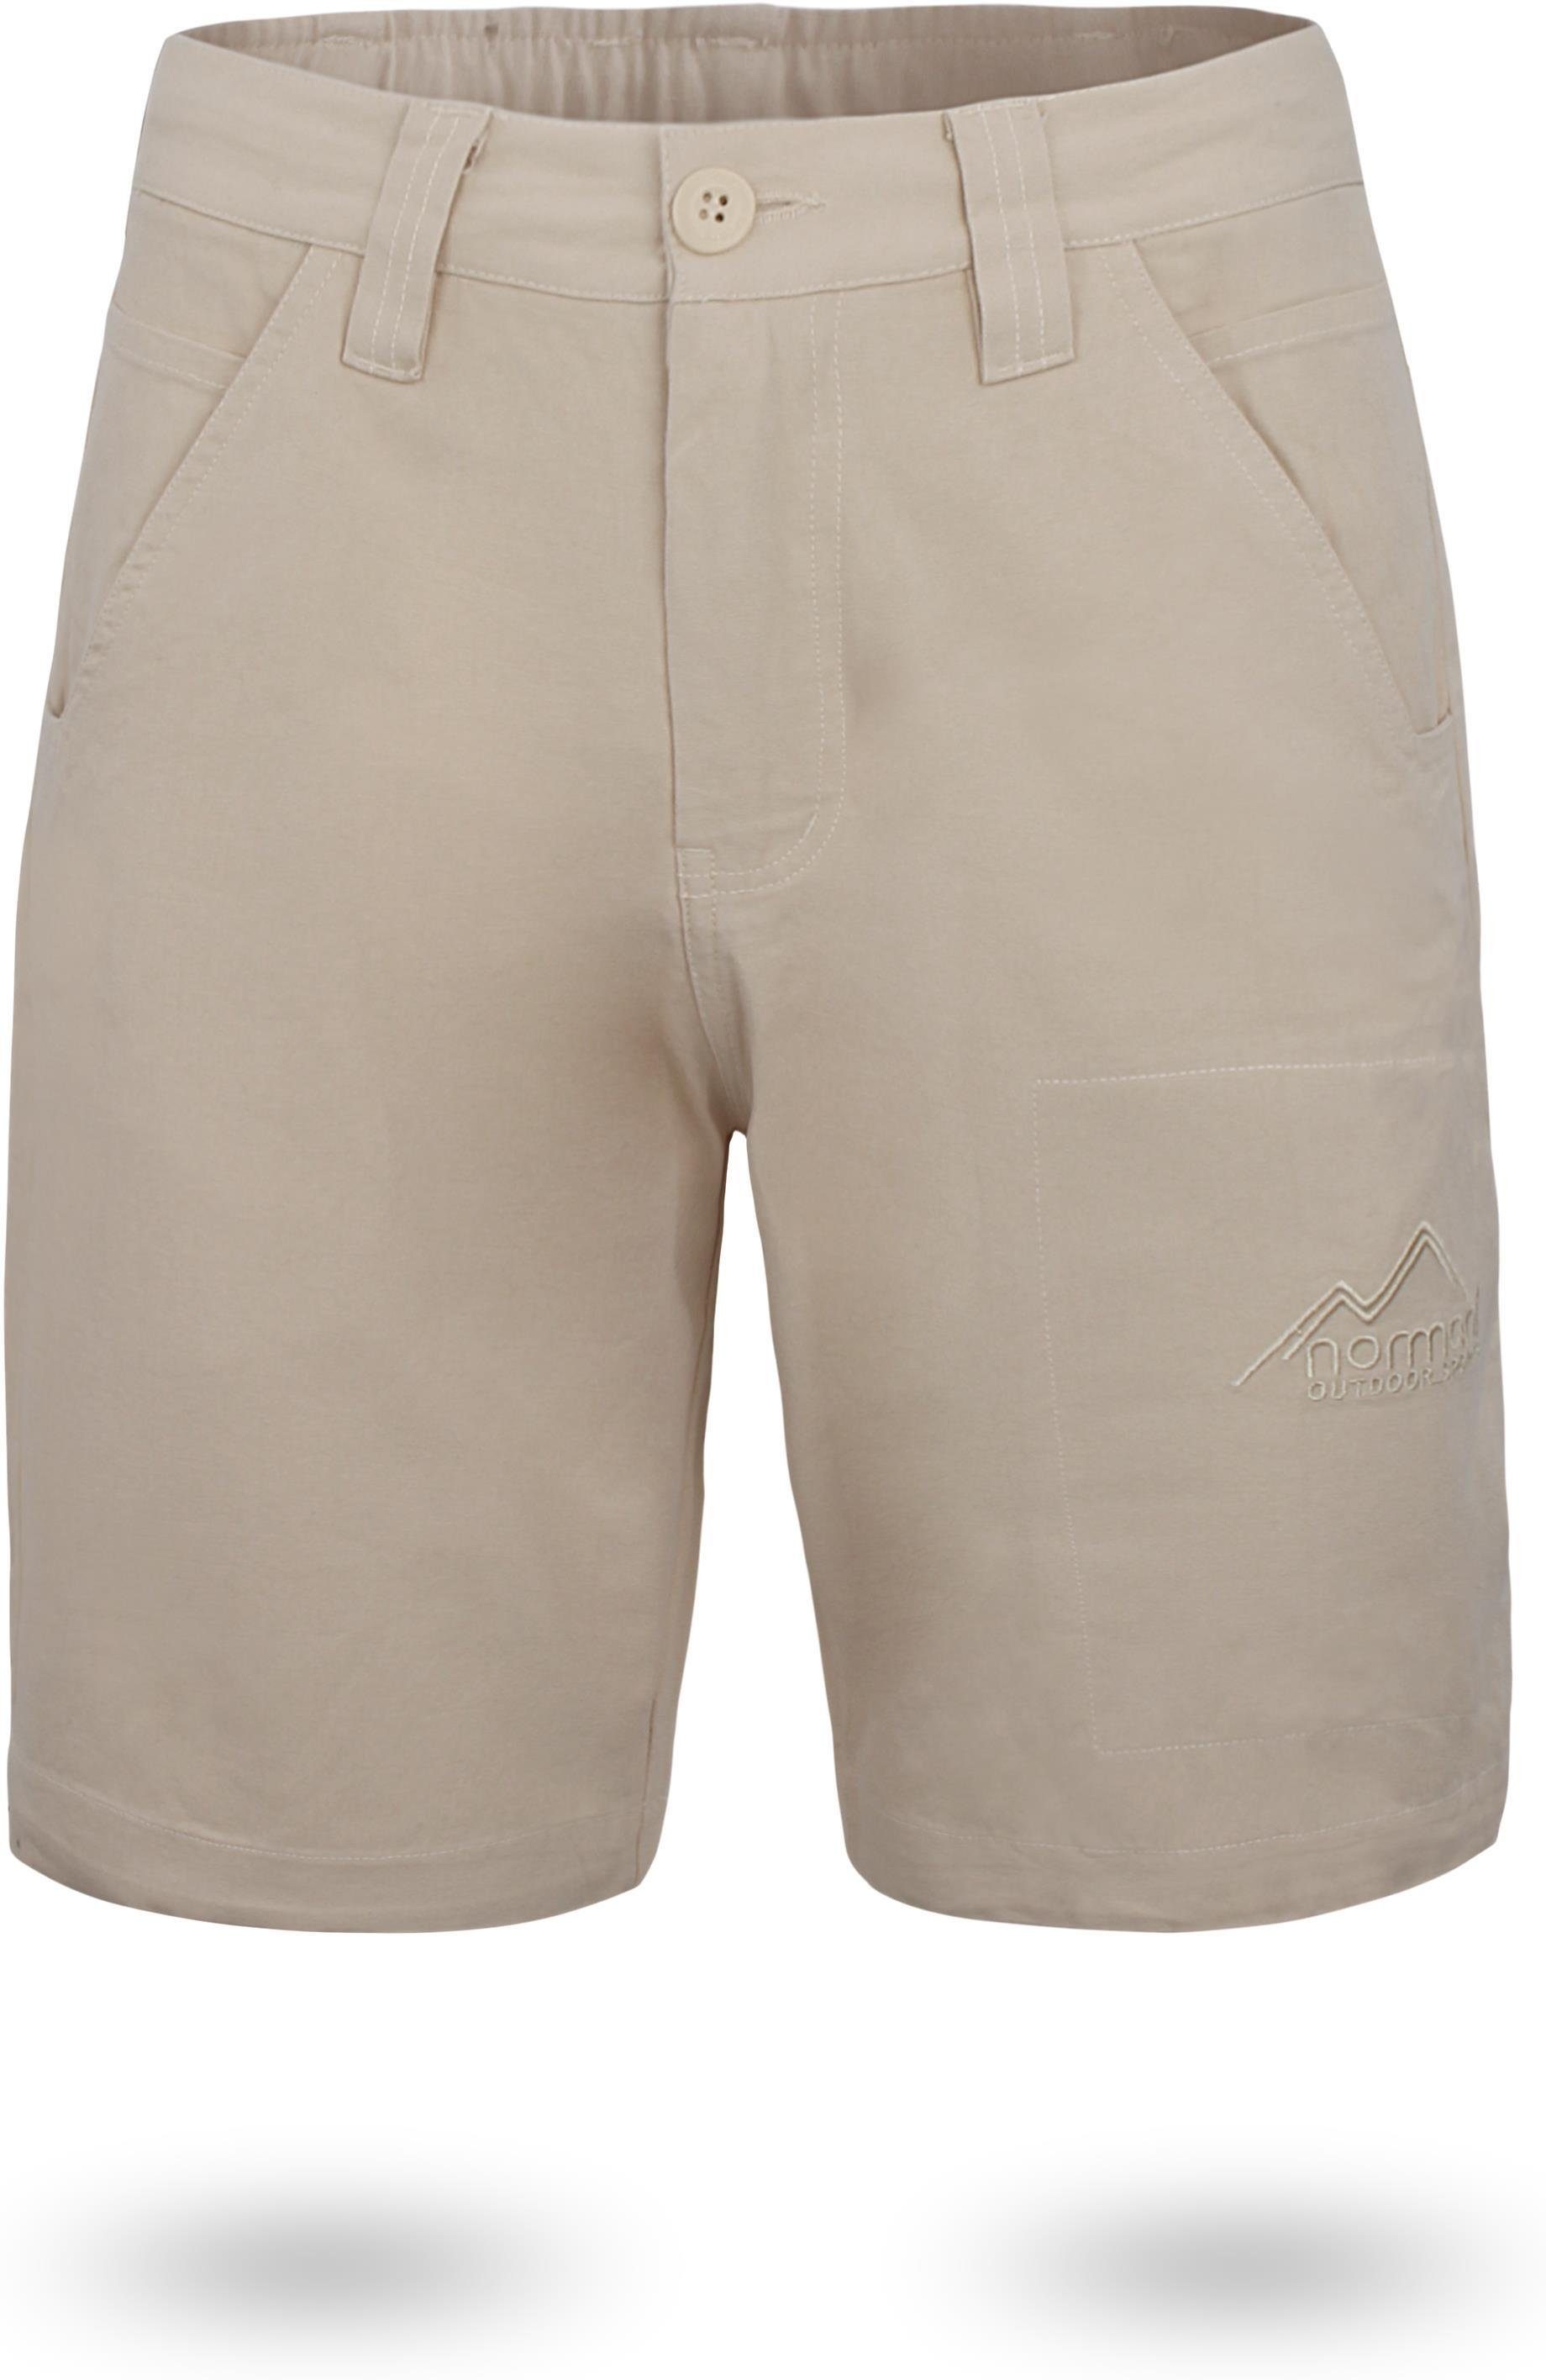 normani Bermudas Herren Shorts Gobi Vintage Shorts kurze Chino Sommershort mit invisible Zippertasche aus 100% Bio-Baumwolle Khaki | Bermudas